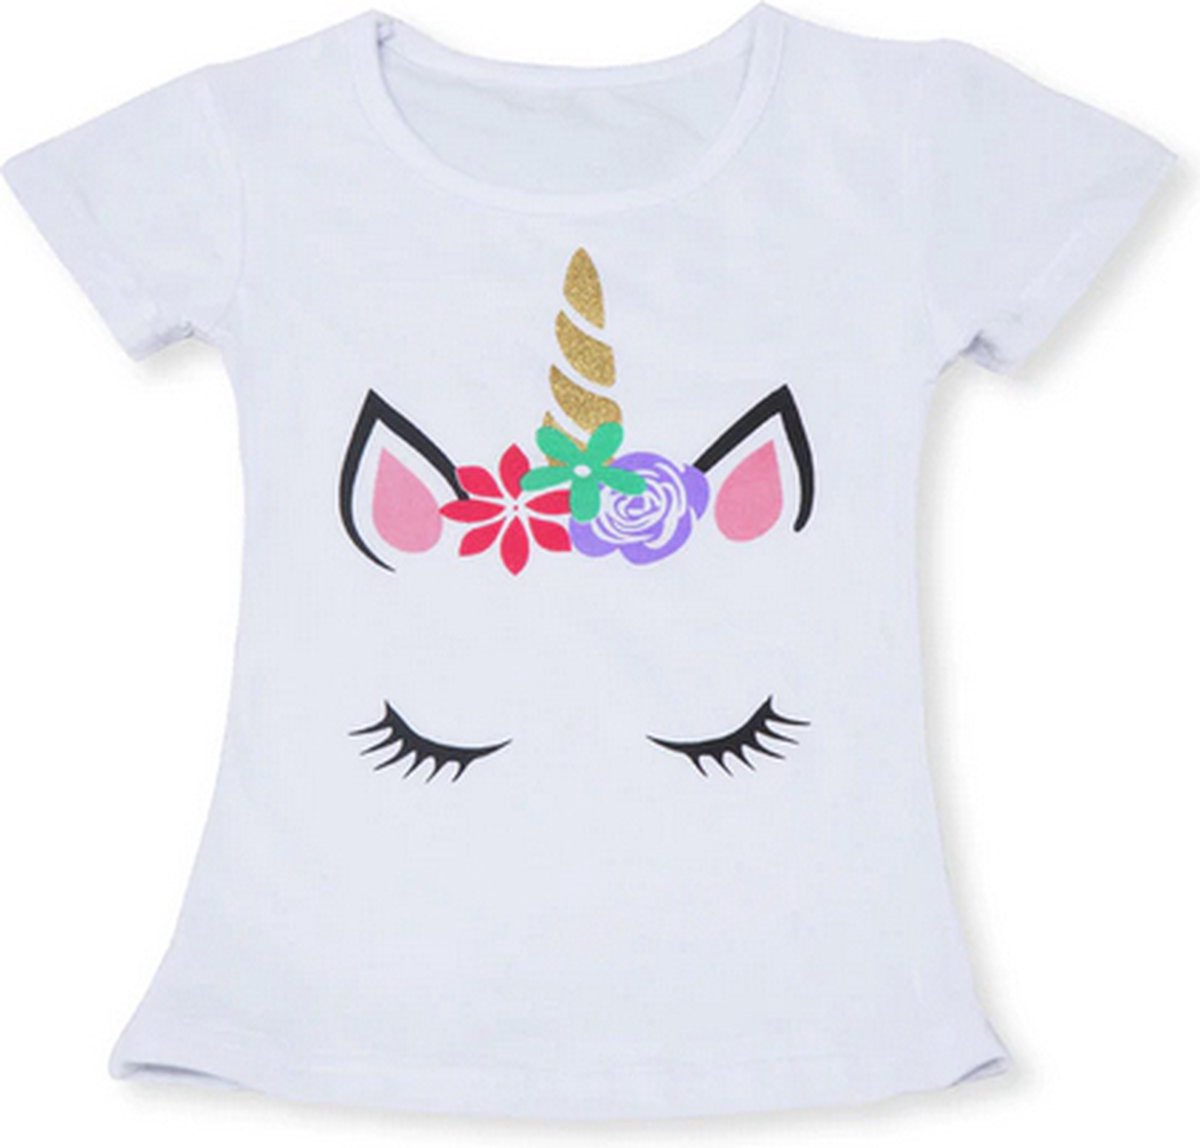 Eenhoorn tshirt meisje - eenhoorn shirt - Unicorn T-shirt - maat 110/116 / L - meisjes eenhoorn shirt 4 - 5 jaar